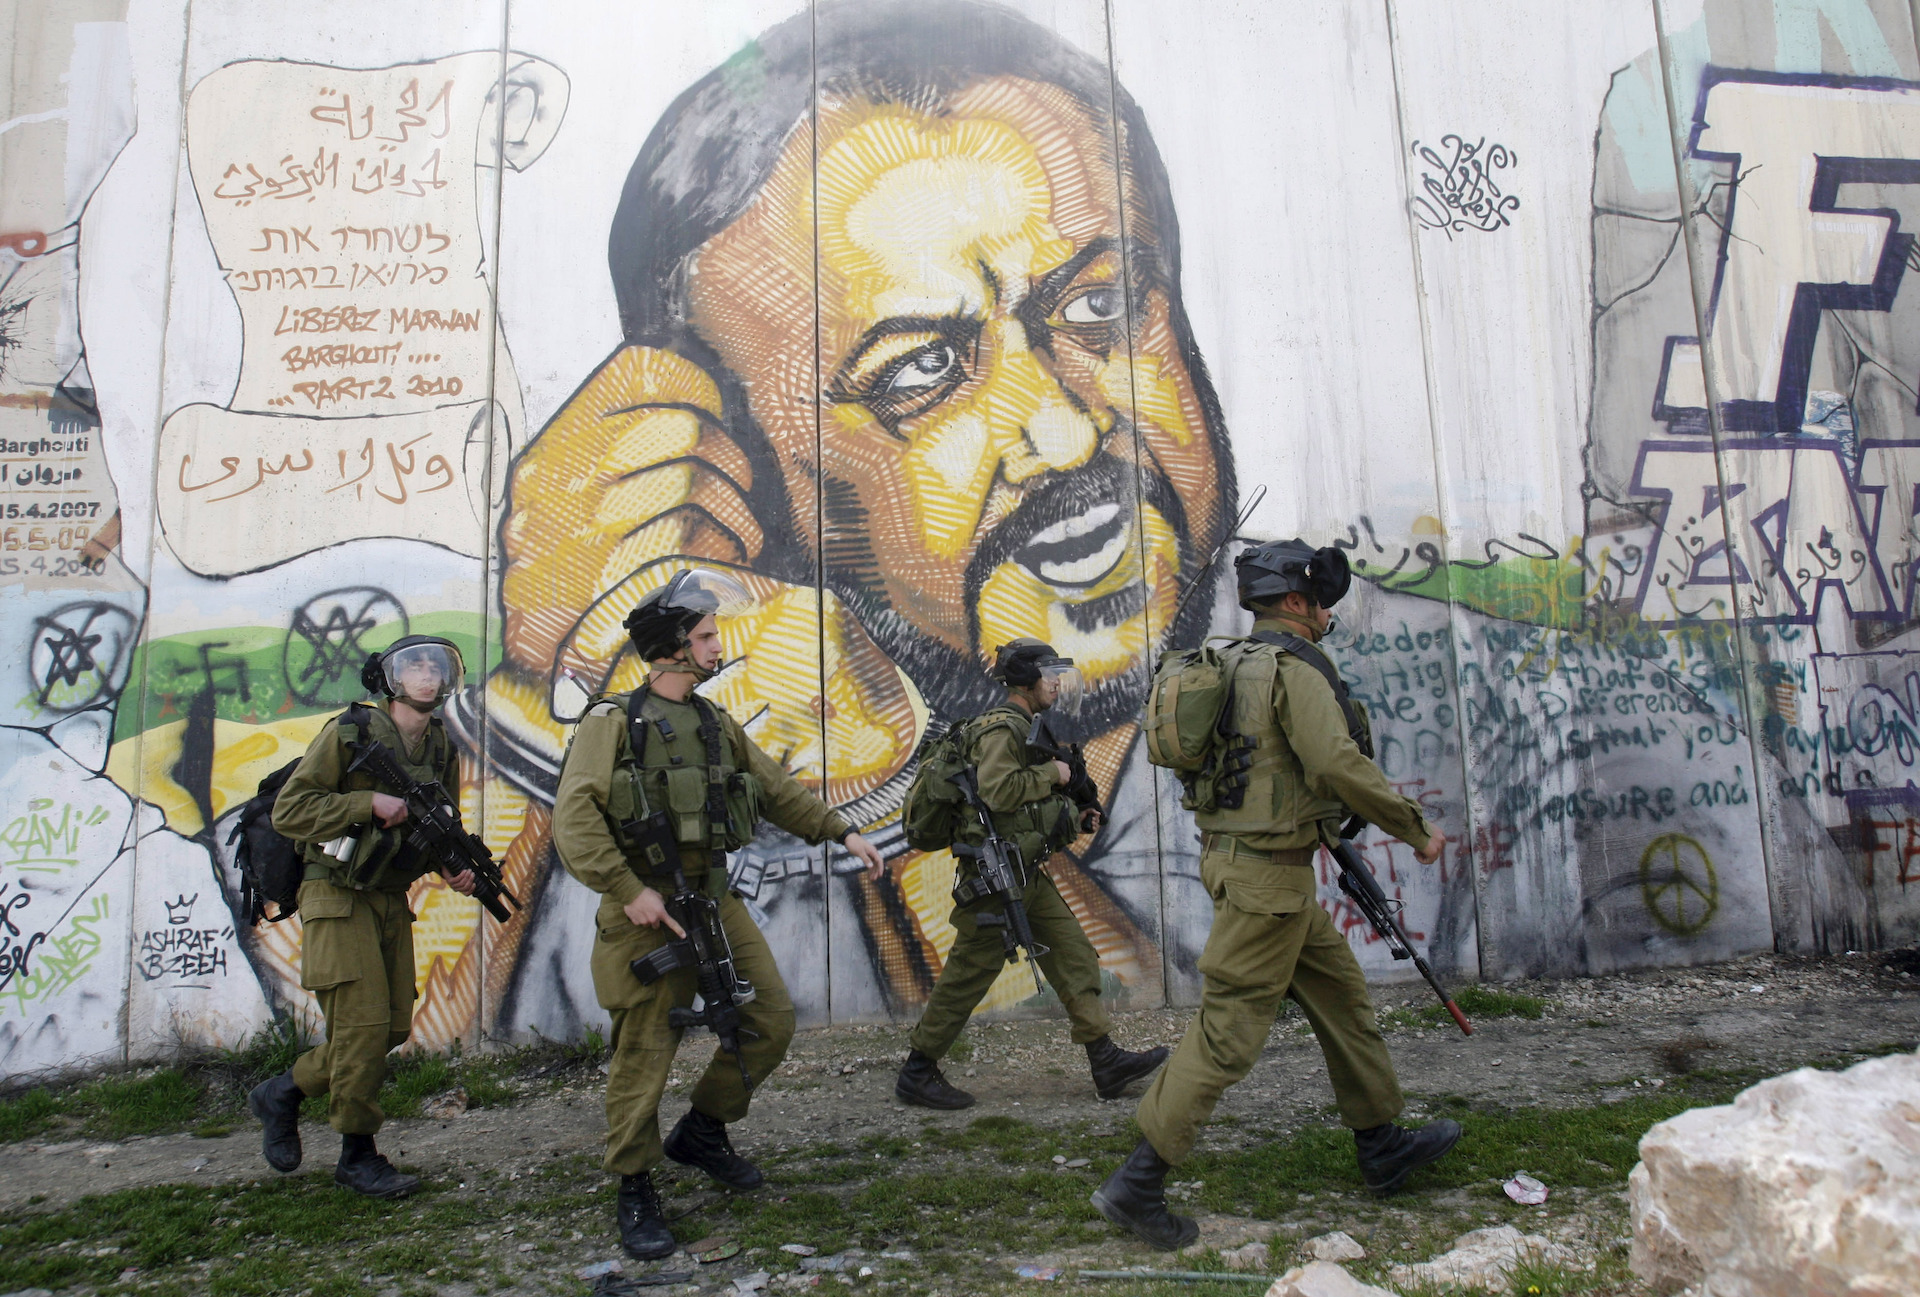 Μαρουάν Μπαργκούτι: Μπορεί ένας Παλαιστίνιος βαρυποινίτης να φέρει την ειρήνη;-2